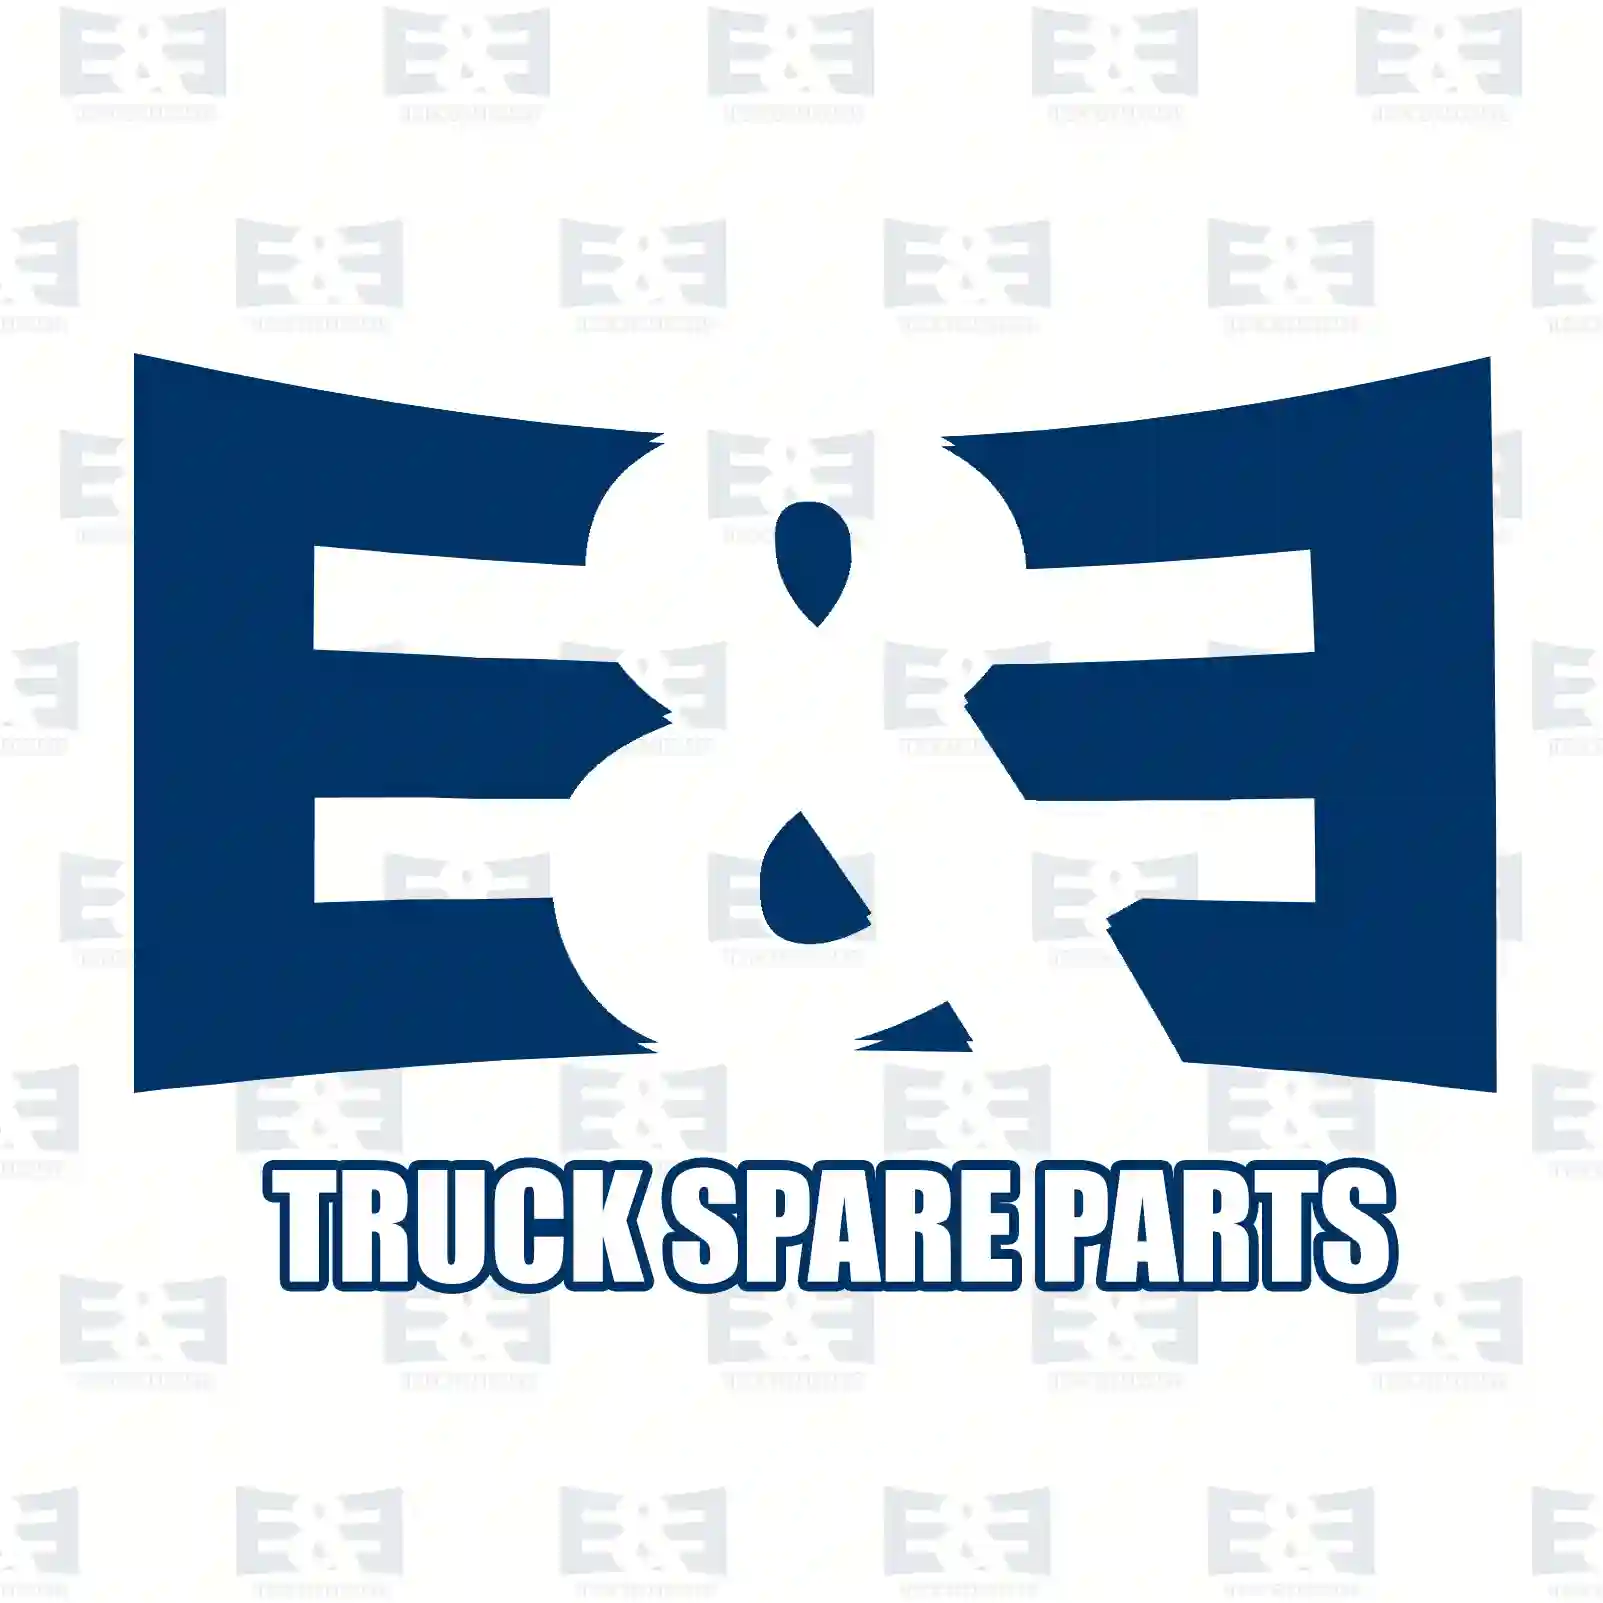 Propeller shaft, 2E2276739, 504003443, 504003 ||  2E2276739 E&E Truck Spare Parts | Truck Spare Parts, Auotomotive Spare Parts Propeller shaft, 2E2276739, 504003443, 504003 ||  2E2276739 E&E Truck Spare Parts | Truck Spare Parts, Auotomotive Spare Parts